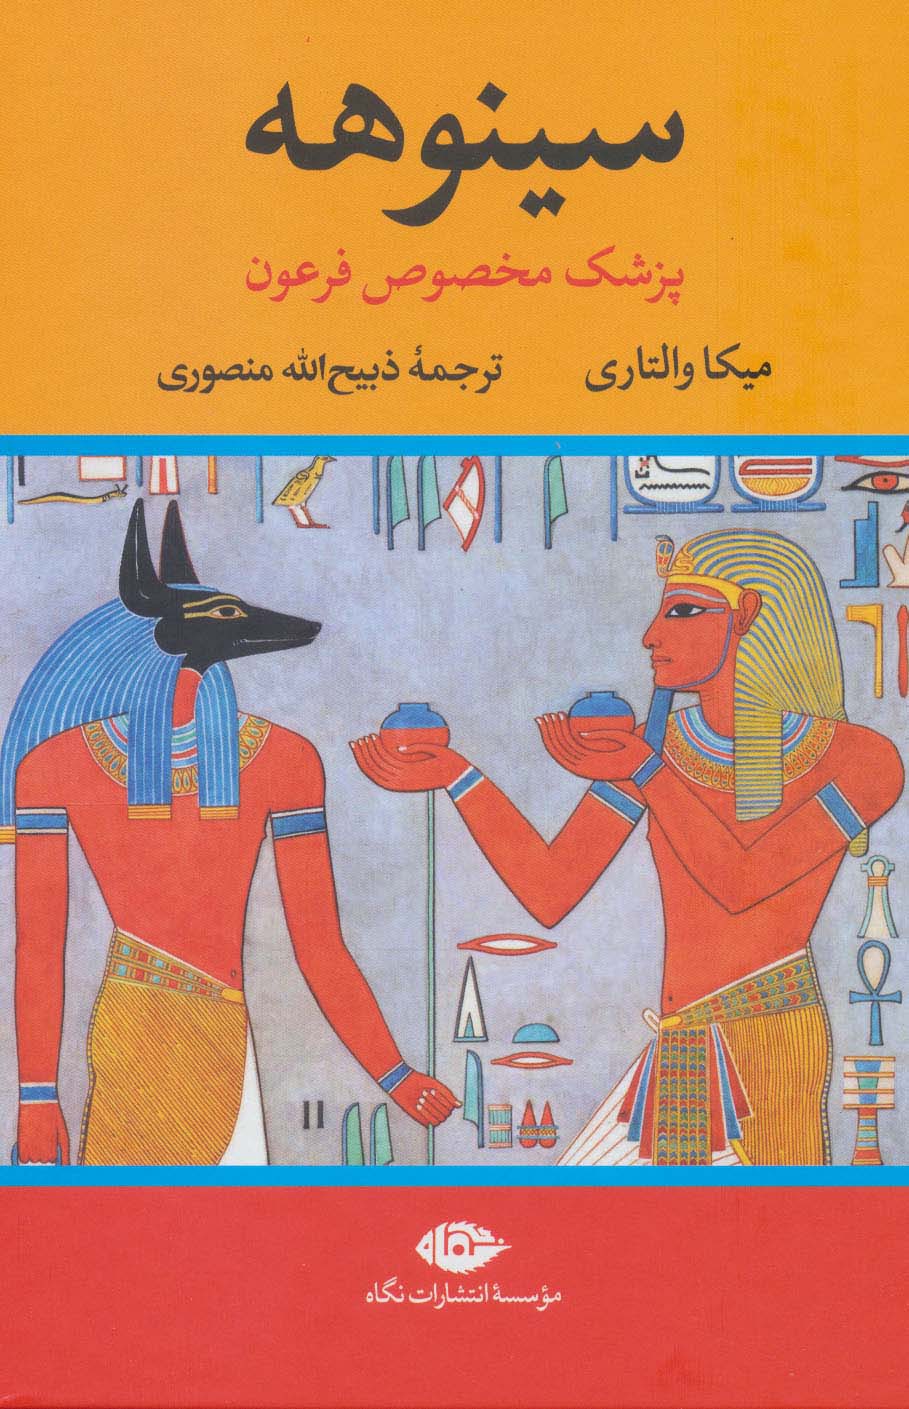 سینوهه پزشک مخصوص فرعون (2جلدی)